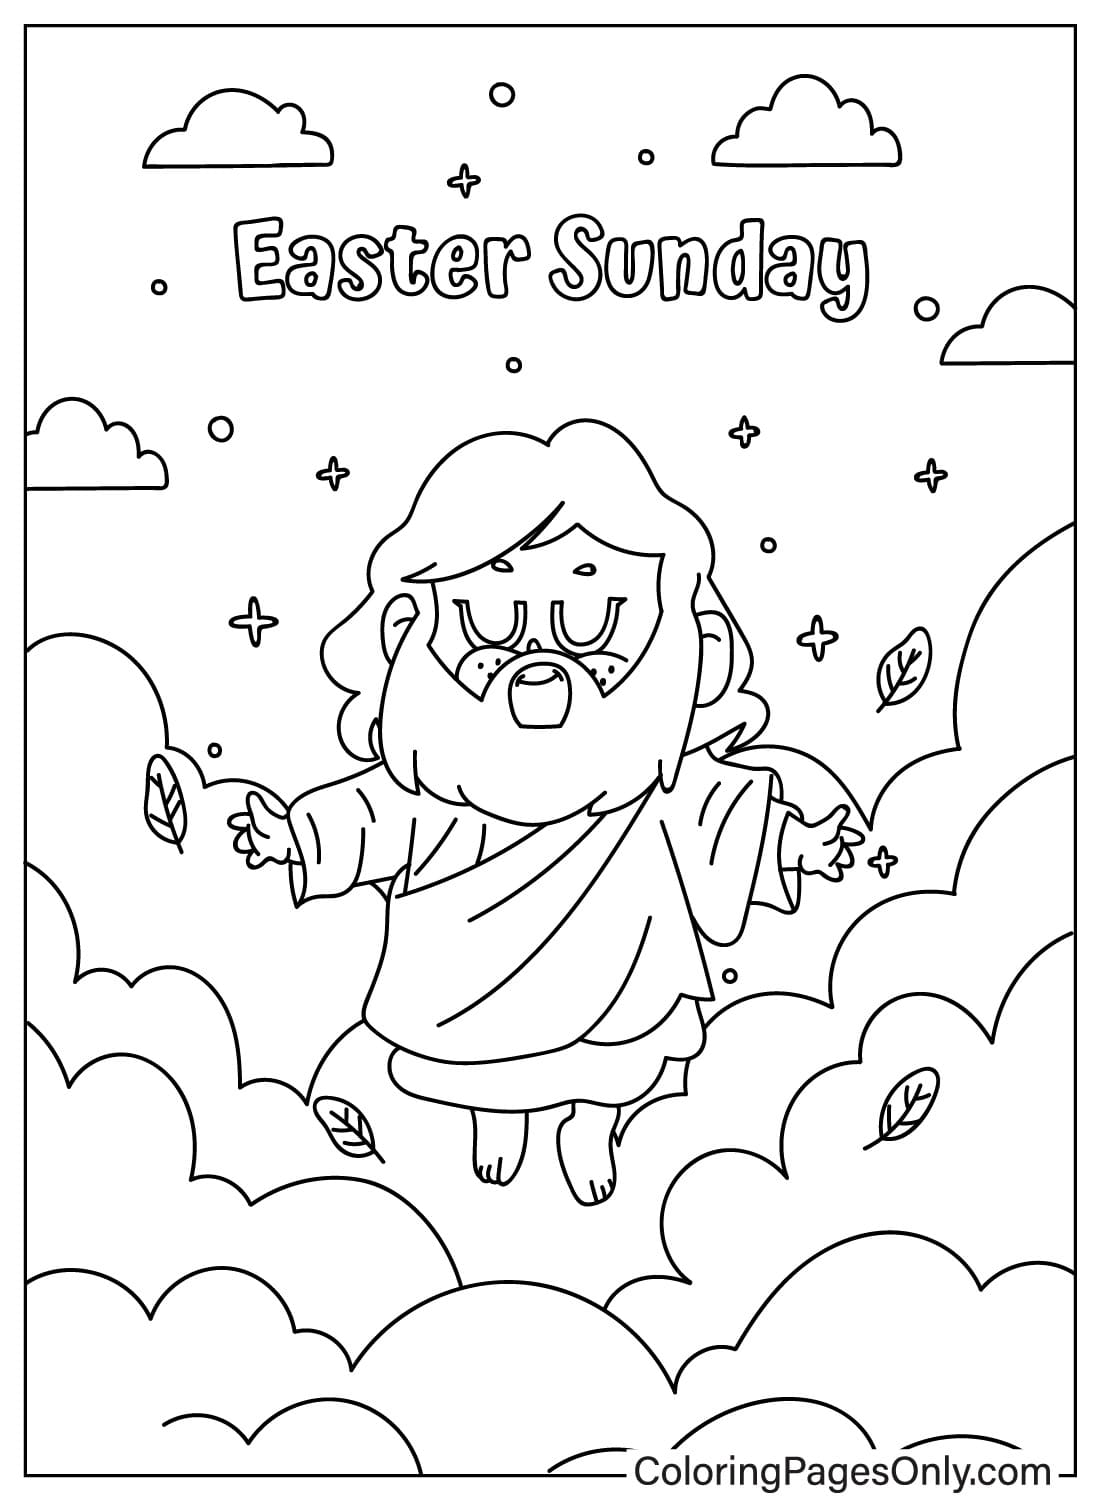 Página para colorear de la resurrección de Jesús de la Pascua religiosa